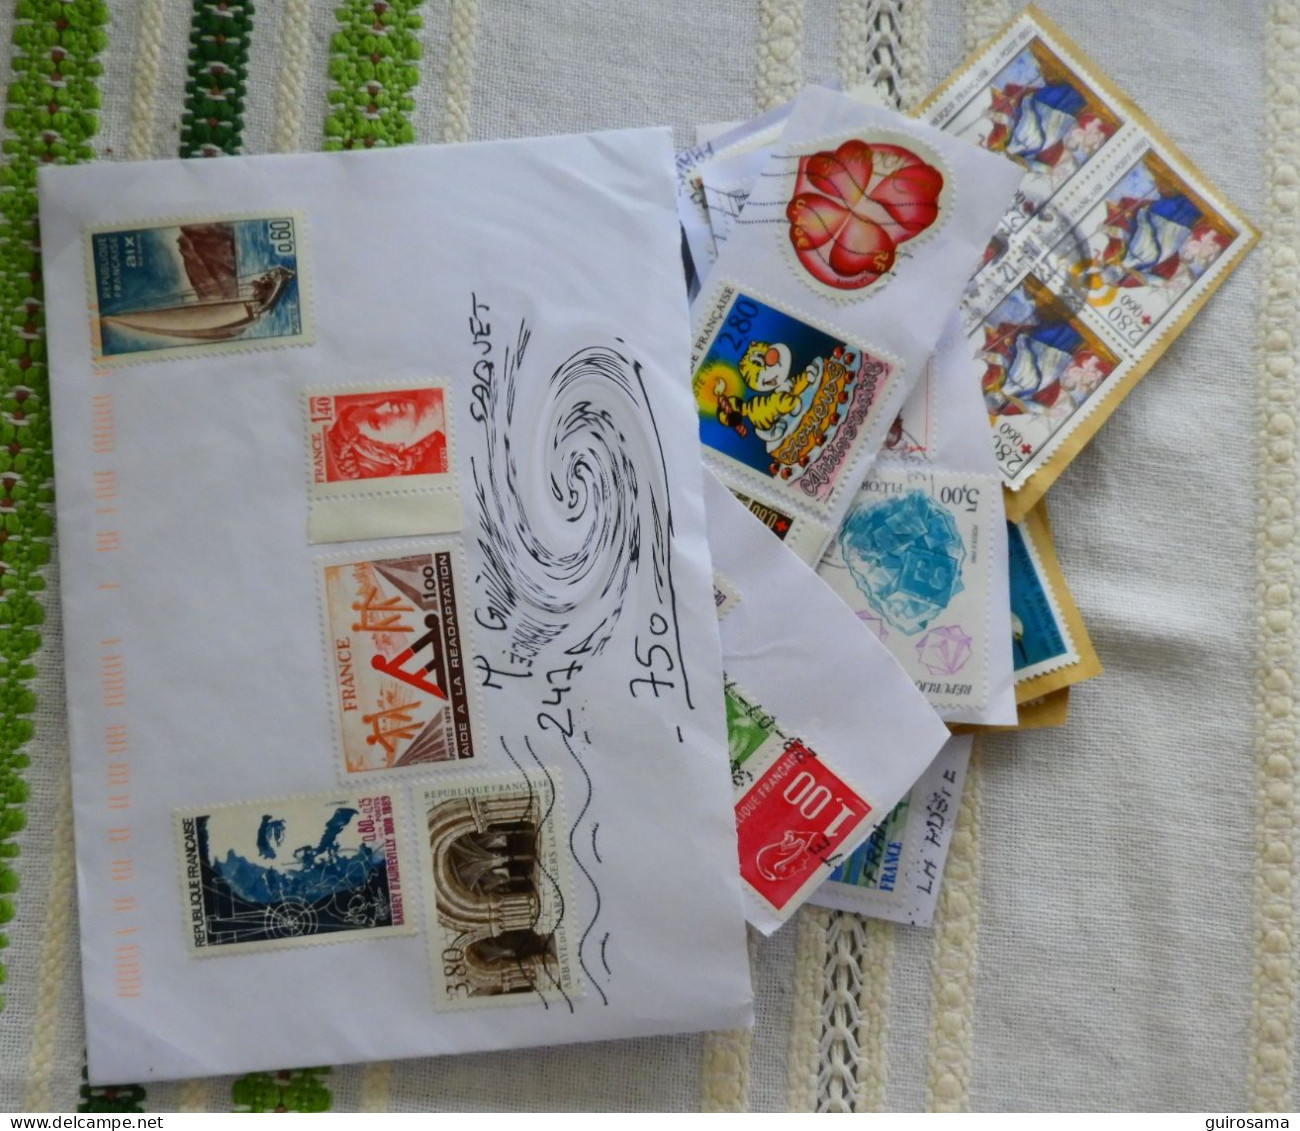 Lot de 230g de timbres oblitérés récents (reçus depuis 2016)